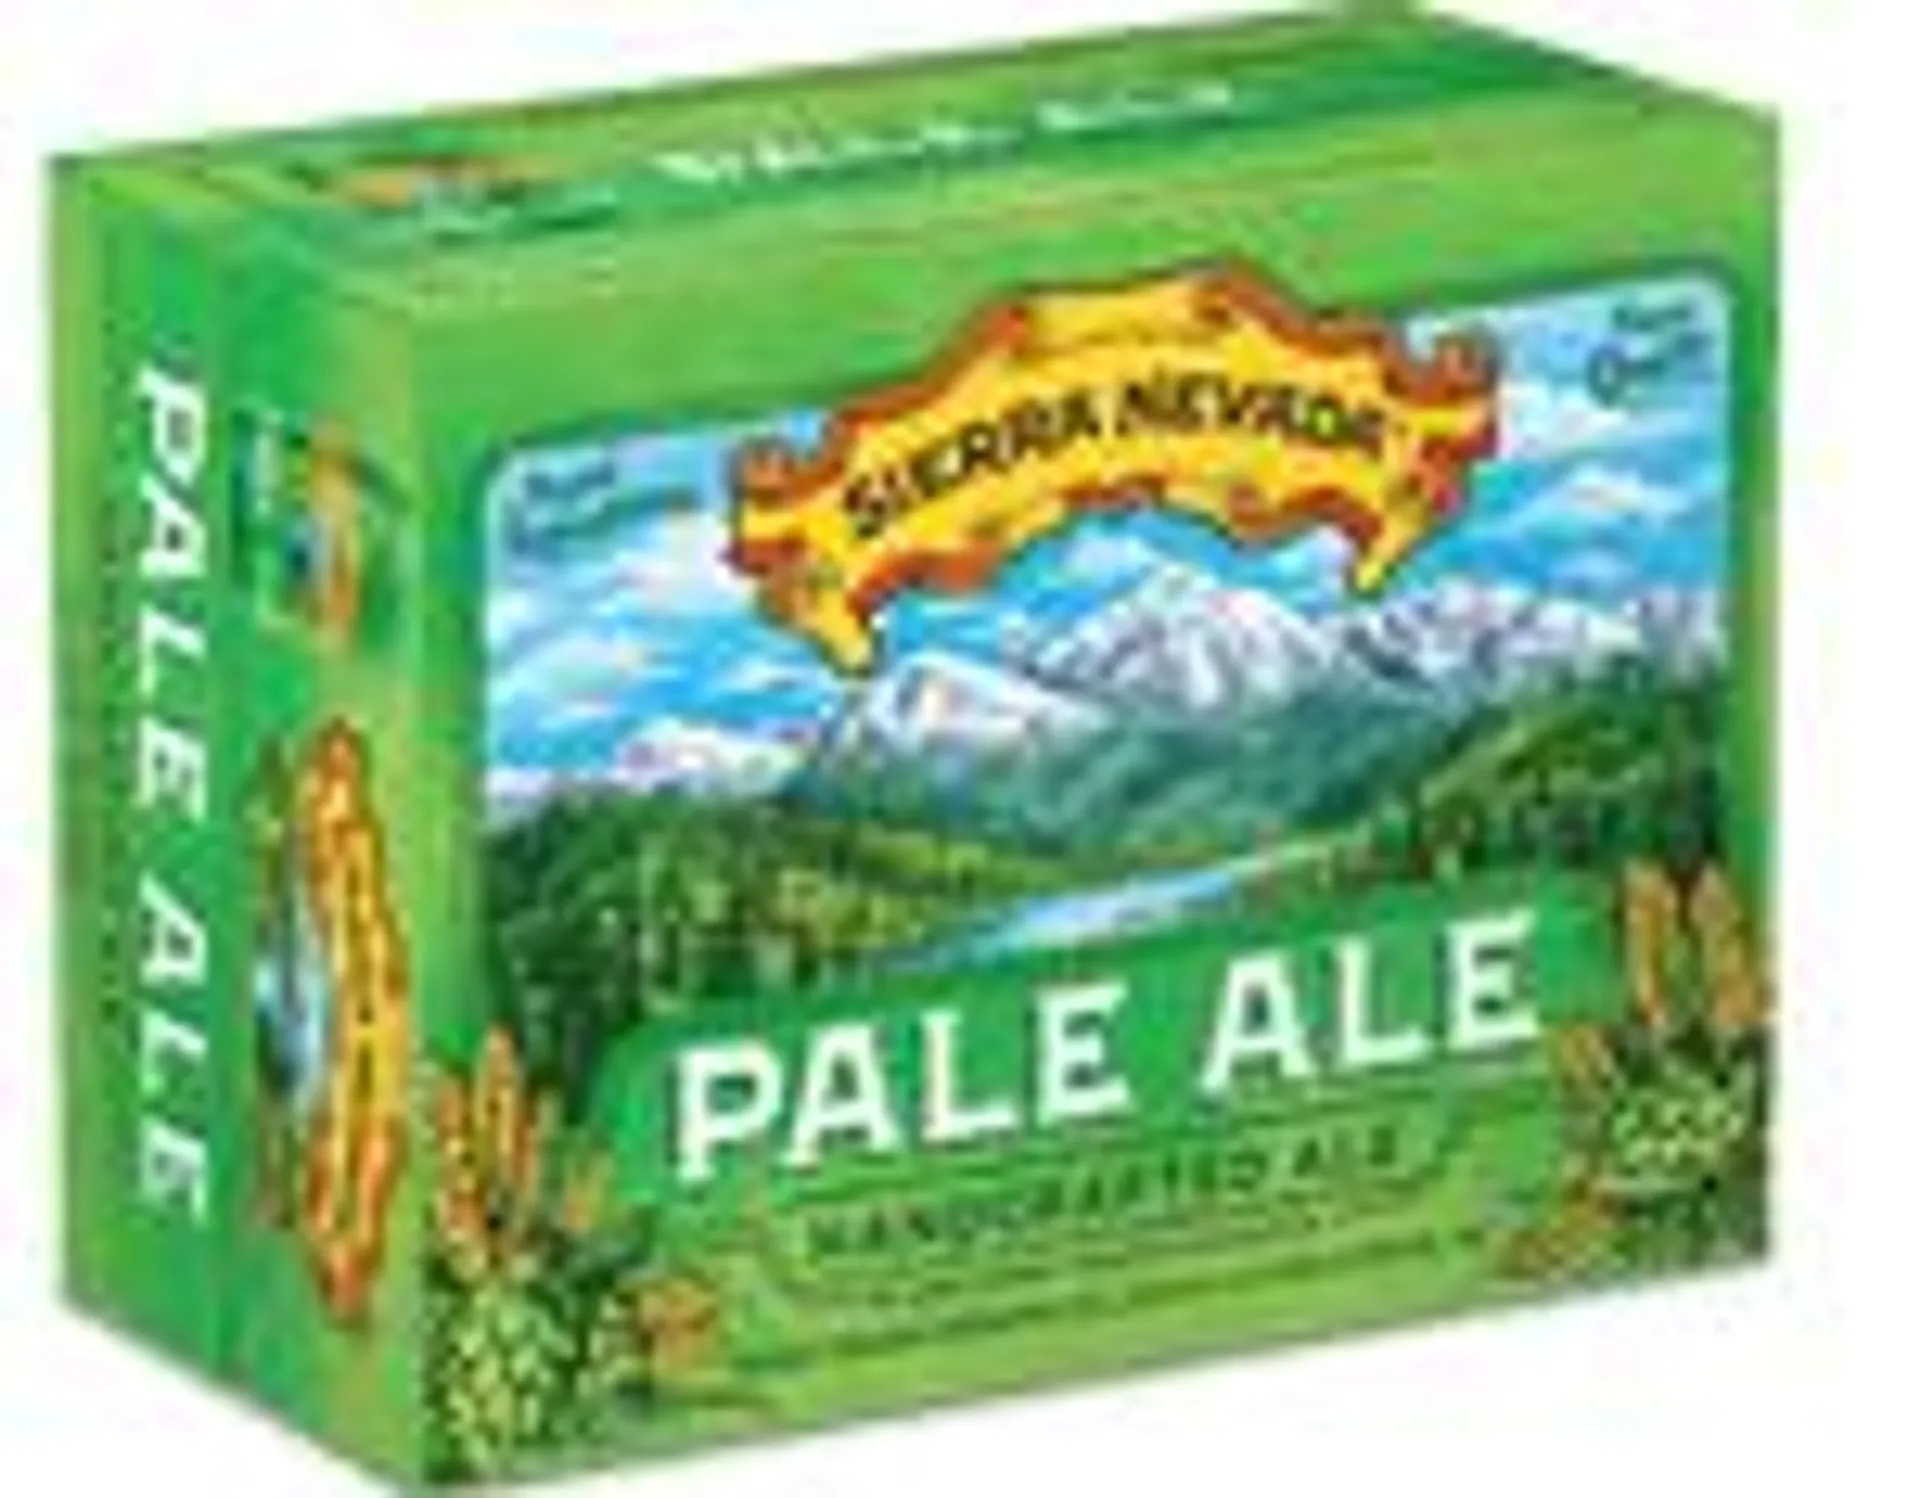 Sierra Nevada Pale Ale 12 Pack